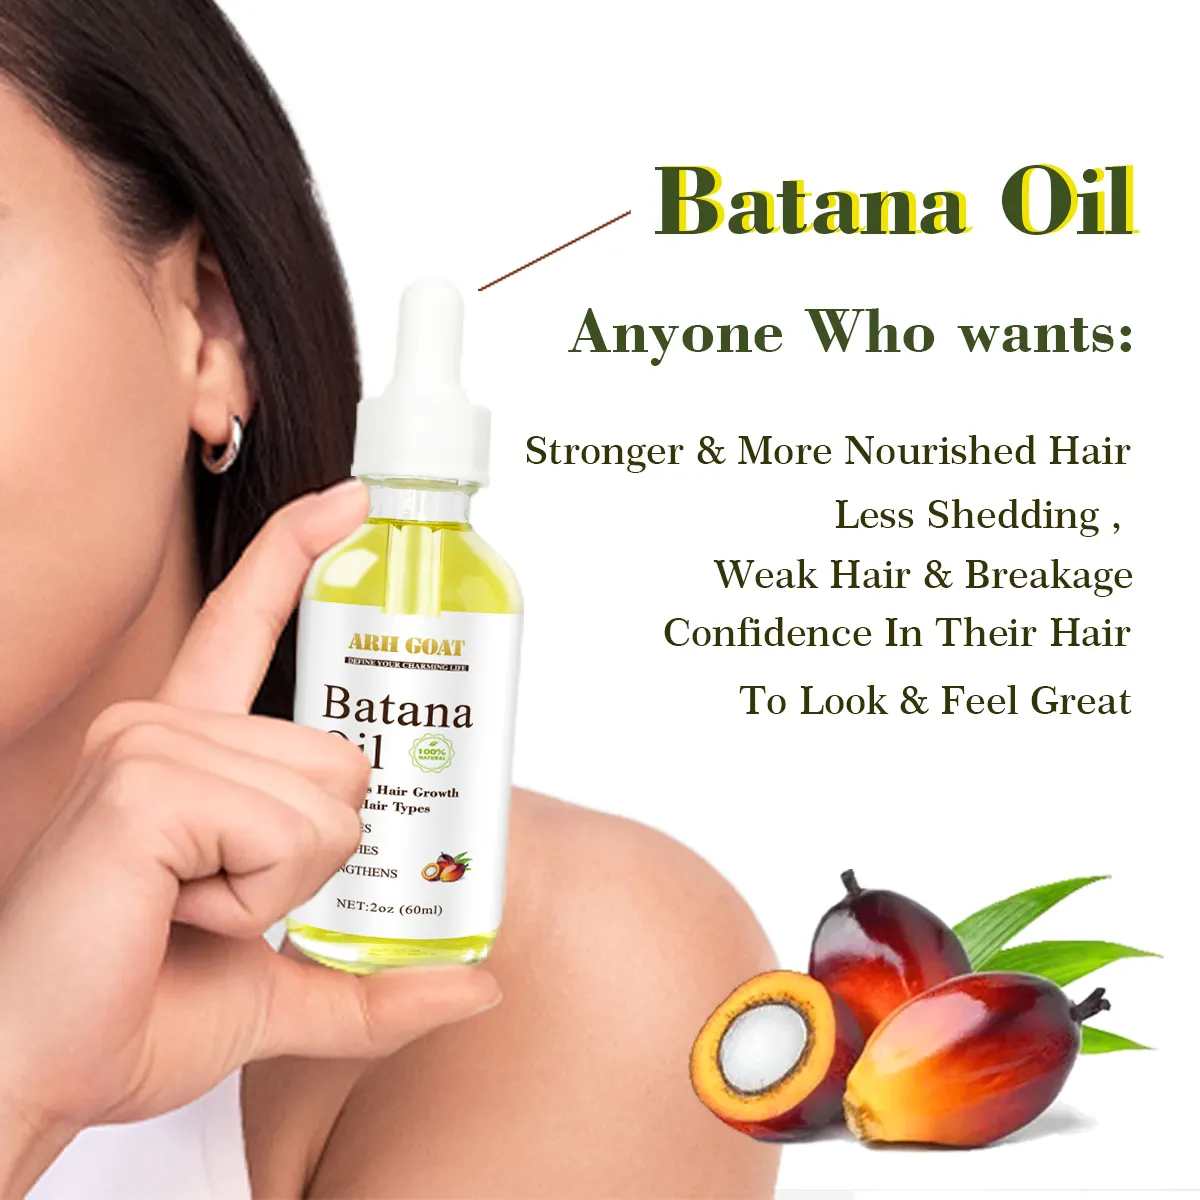 Vente en gros d'huile de batana naturelle de marque privée pour la réparation capillaire Créez votre propre marque d'huile de batana naturelle 100% pour la croissance des cheveux